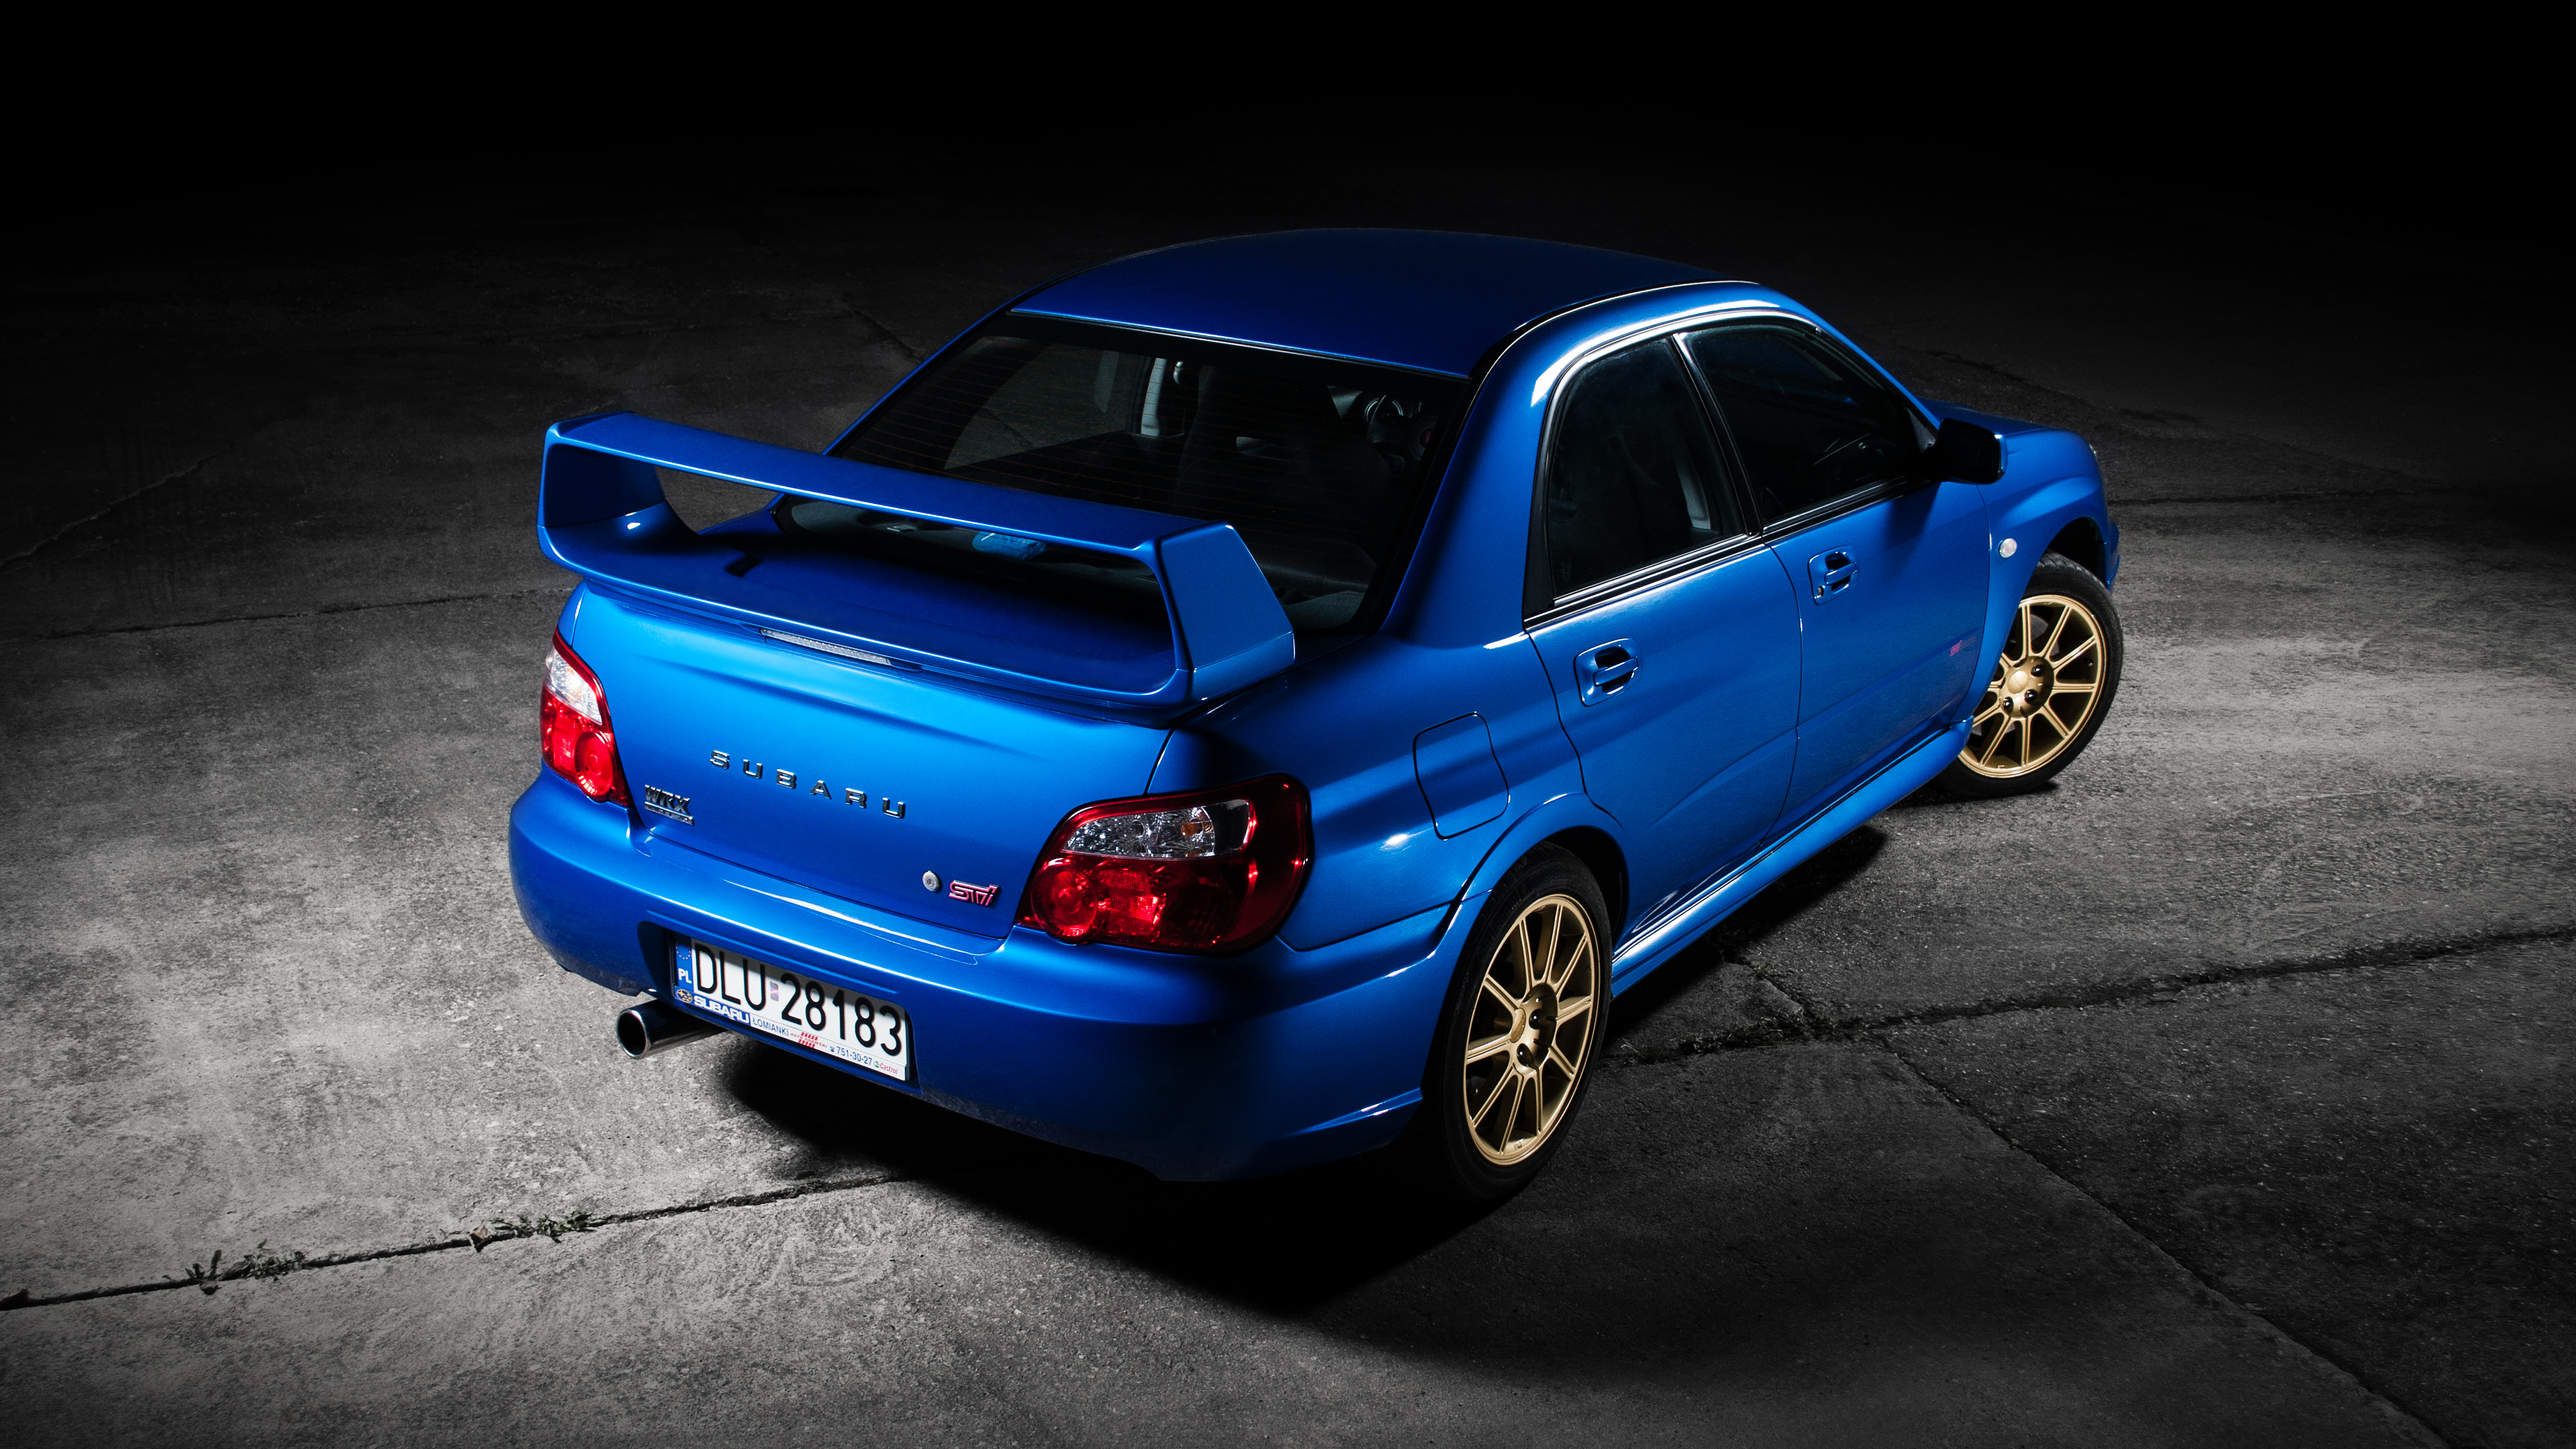 Tapeta: Subaru Impreza Wrx Sti | Antymoto Blog Motoryzacyjny